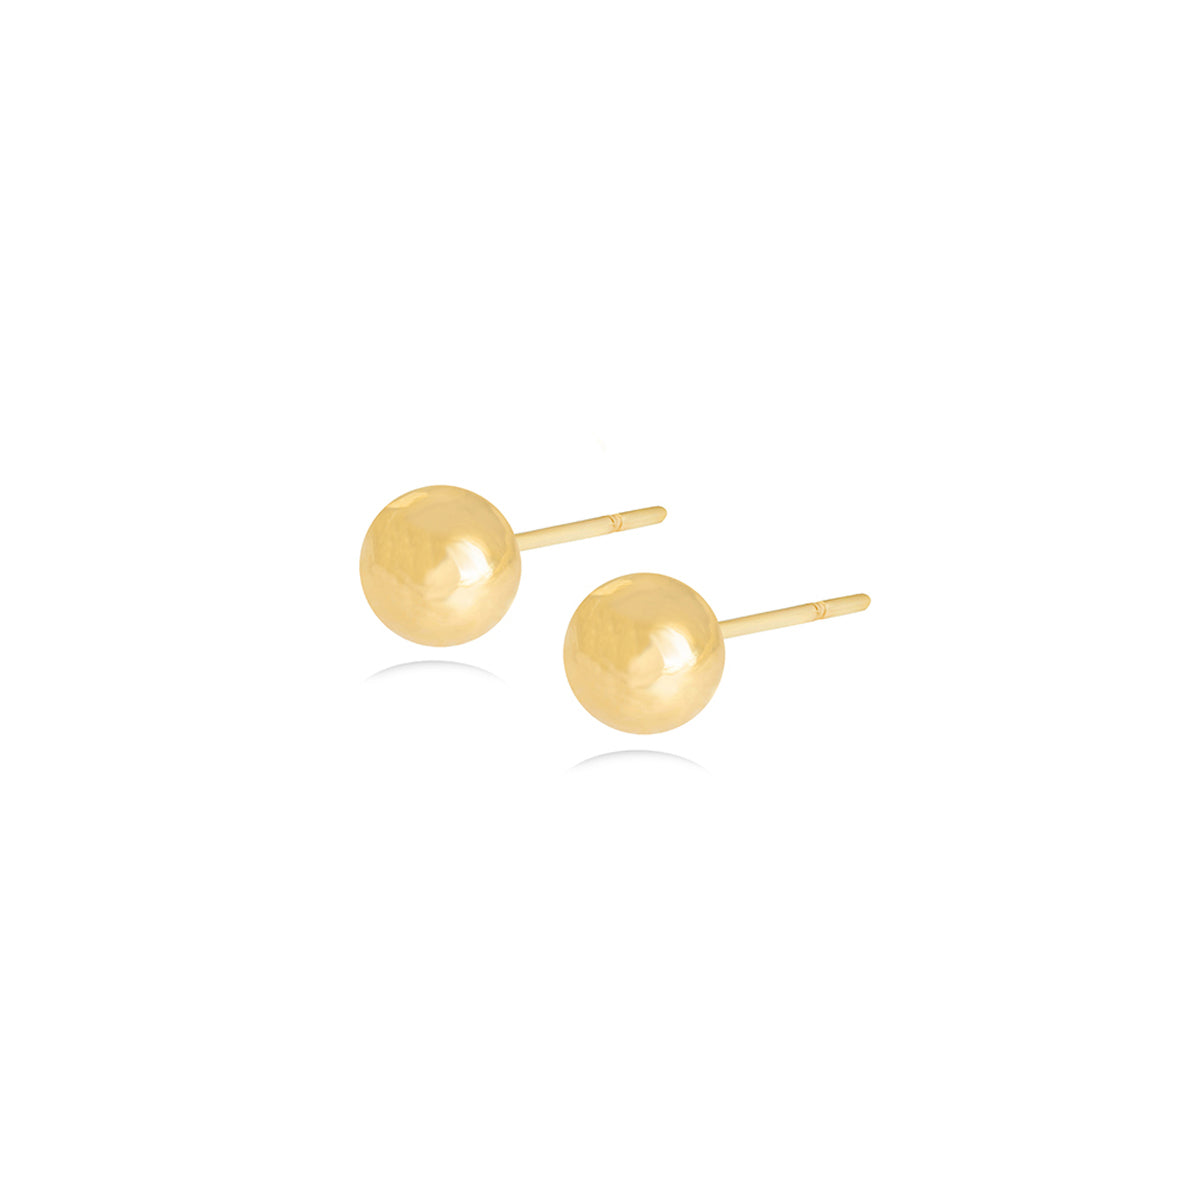 Ball Stud Earrings in 18k Yellow Gold